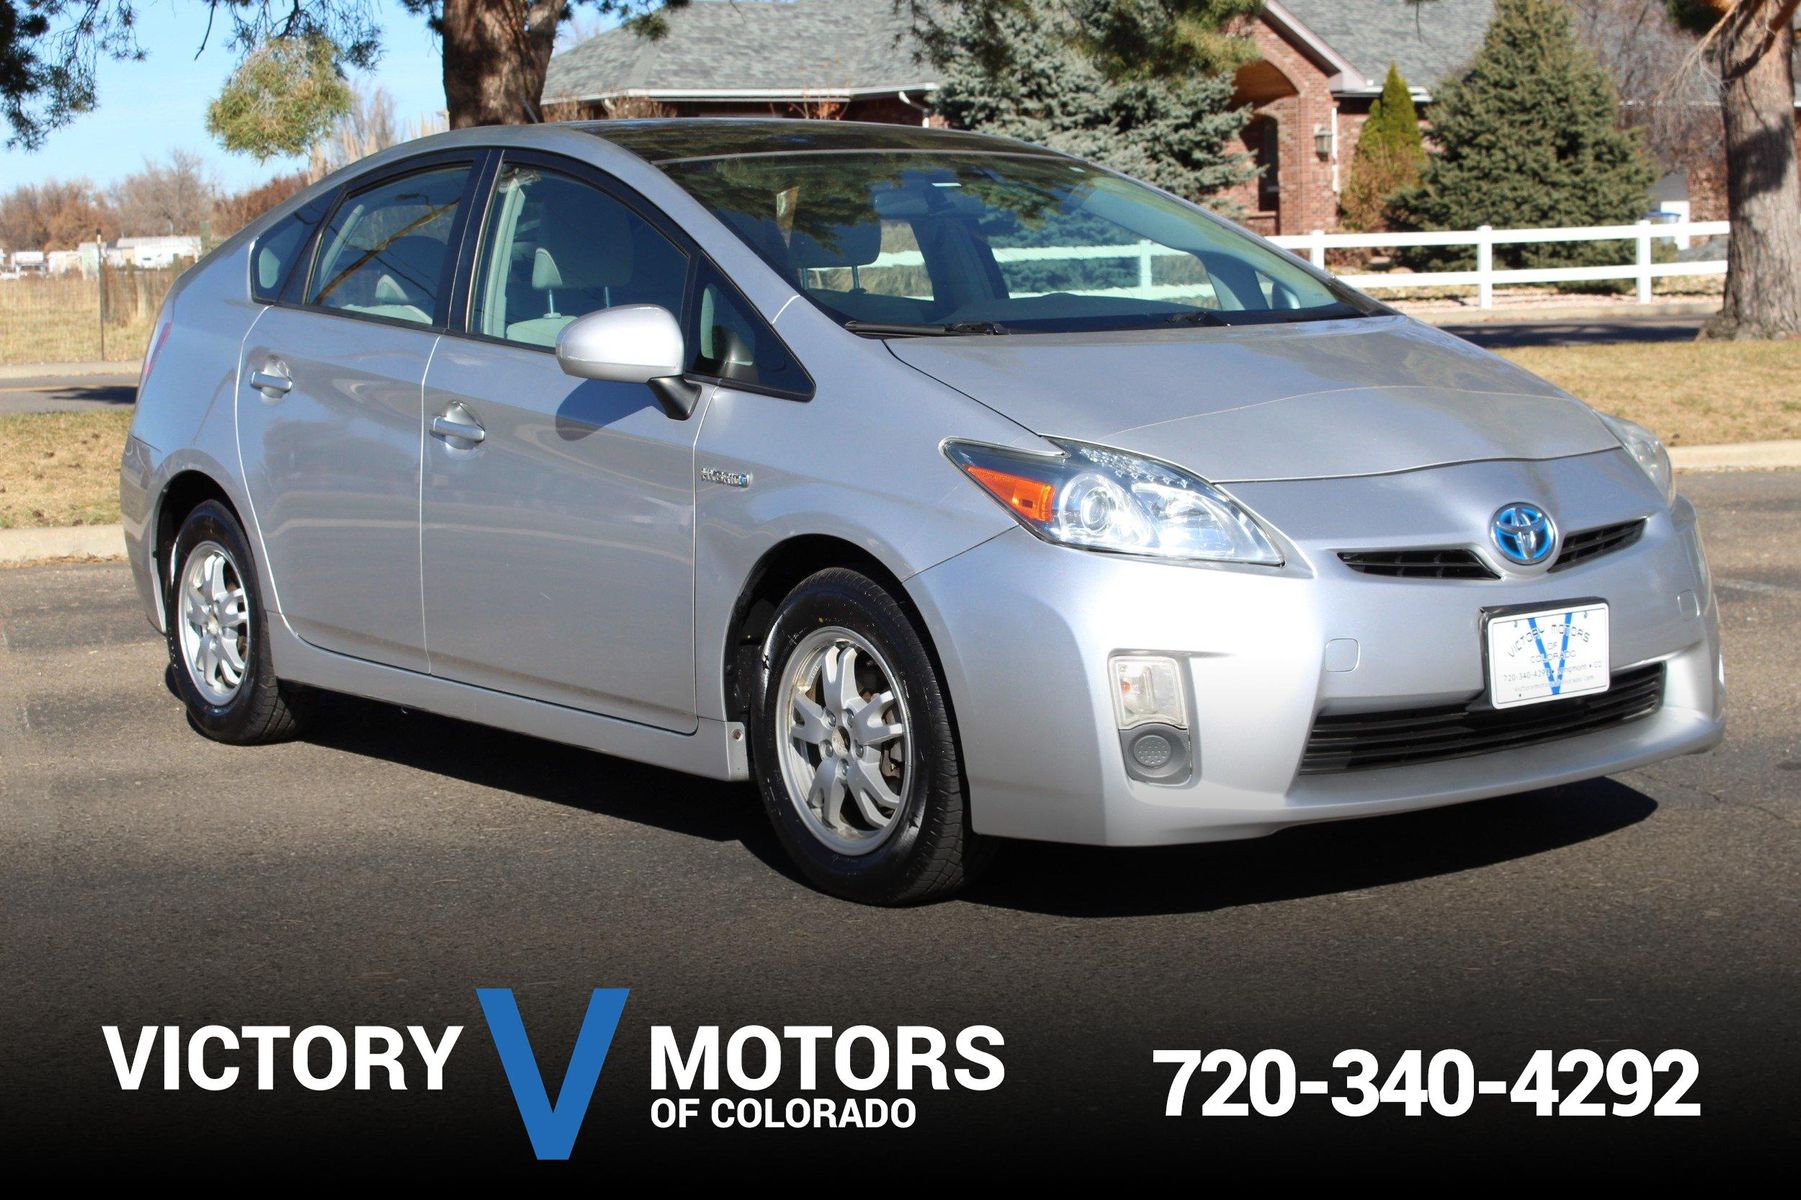 2010 Toyota Prius Victory Motors of Colorado